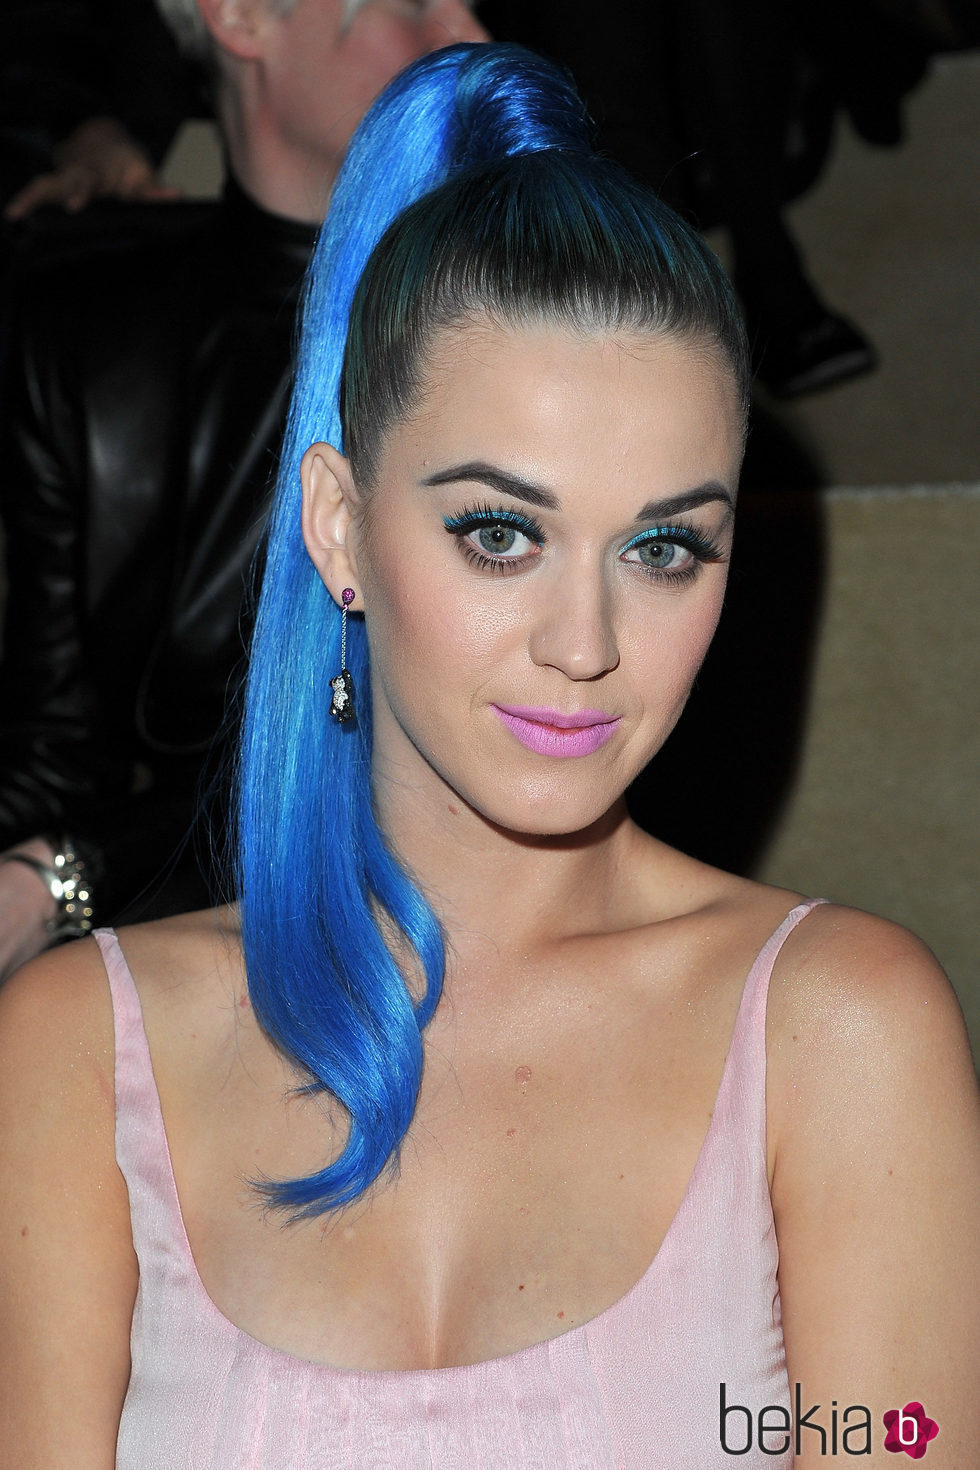 Katy Perry con cola de caballo azul